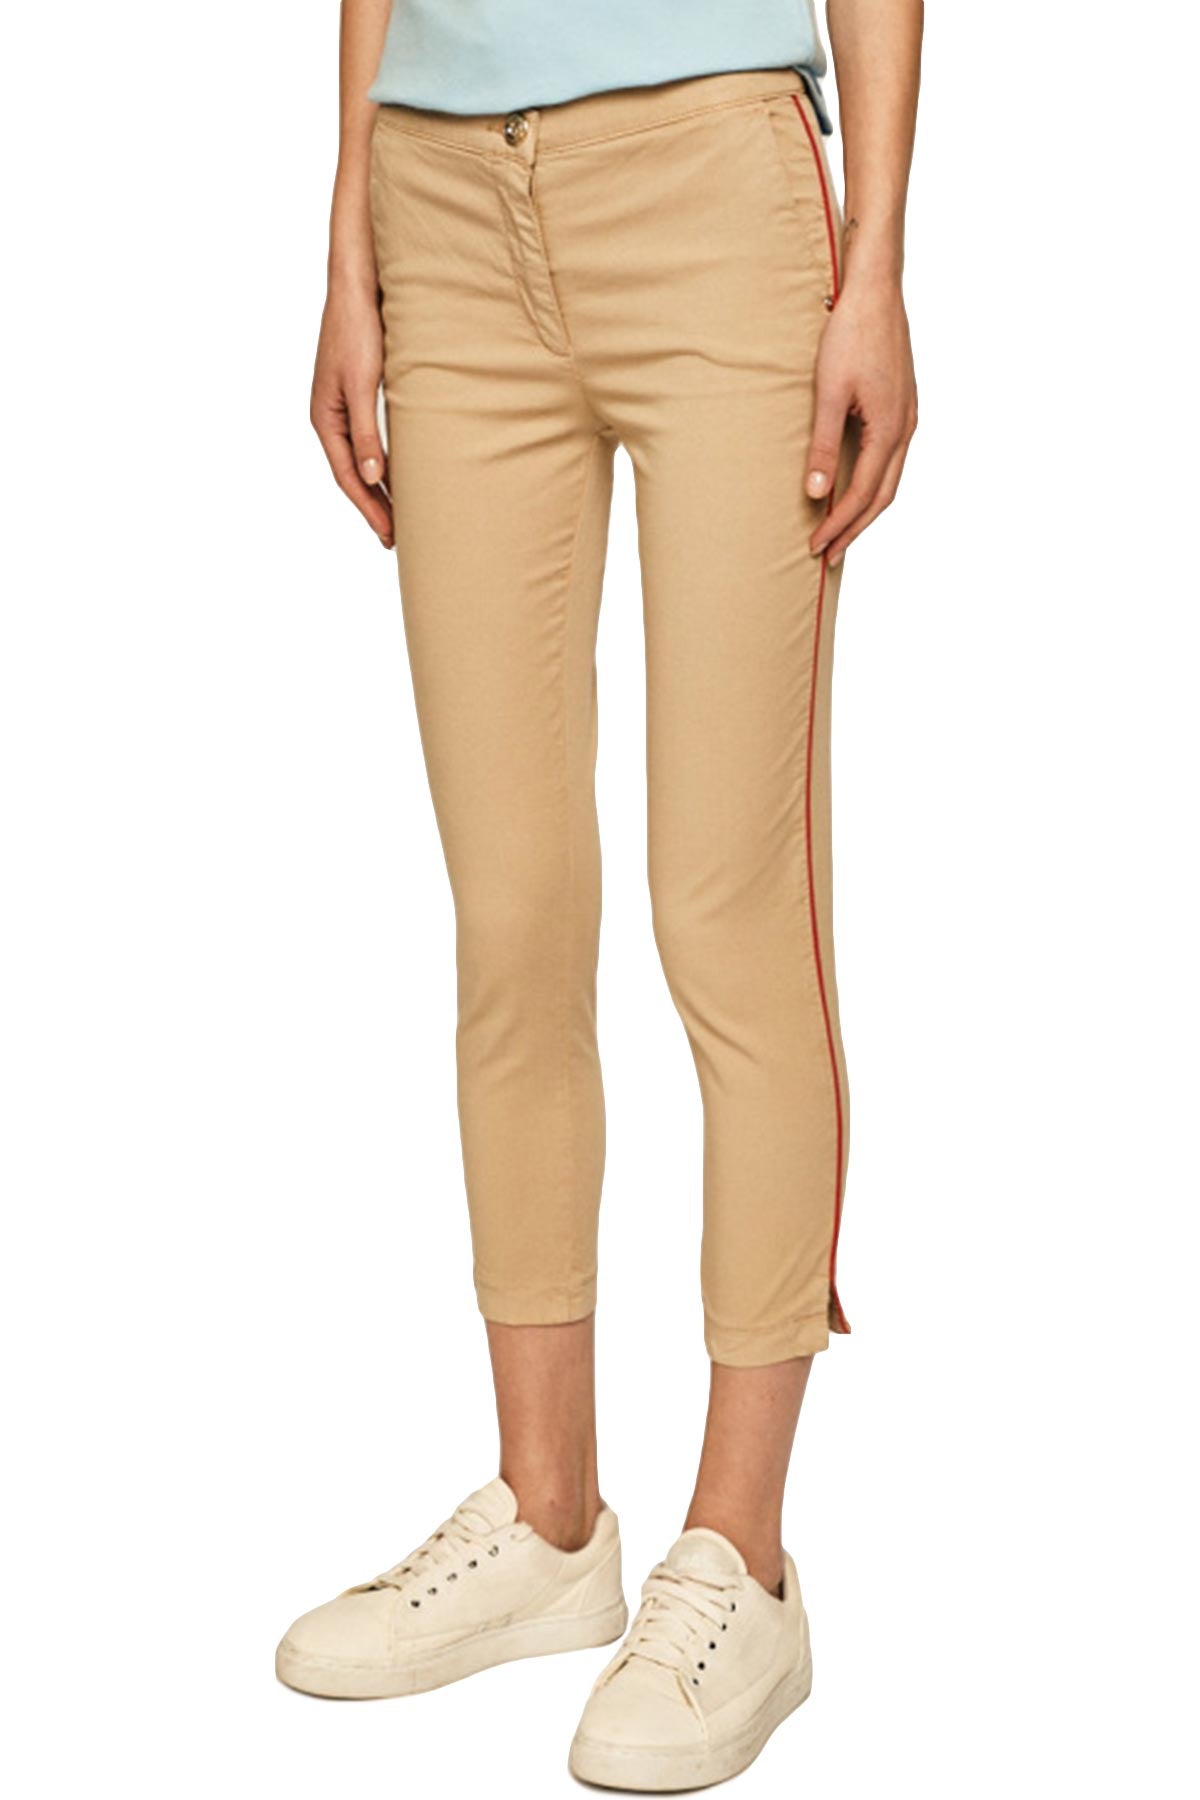 Trussardi Jeans Slim Fit Pantolon-Libas Trendy Fashion Store